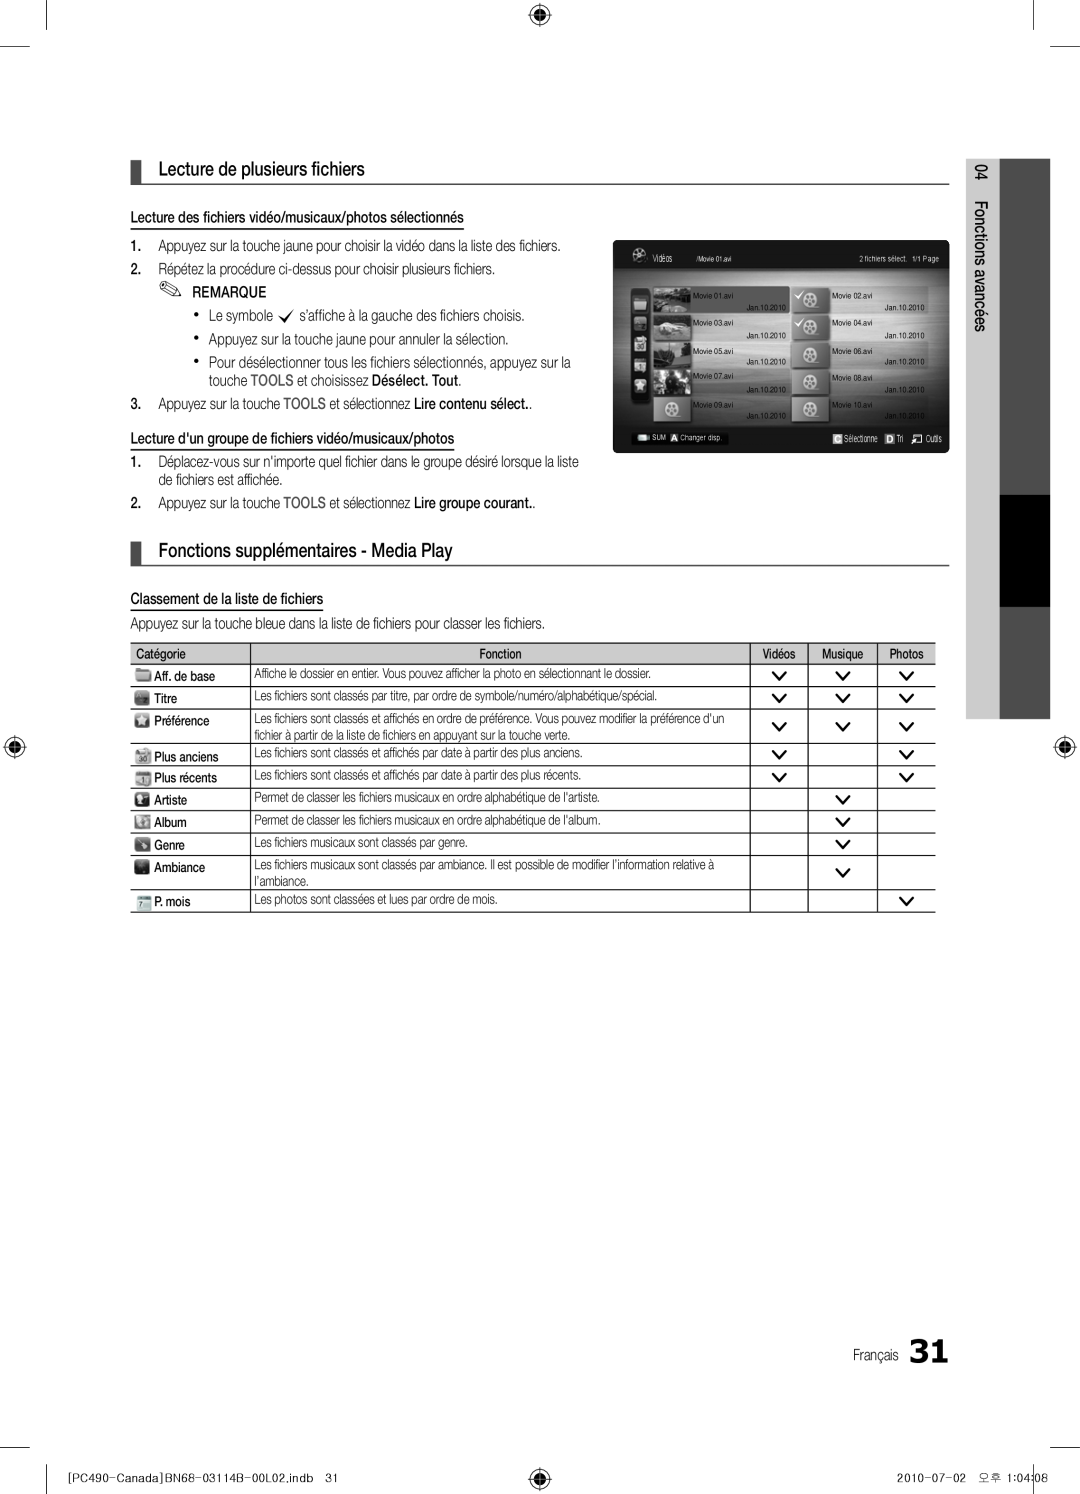 Samsung Series P4+ 490, BN68-03114B-01, PN50C490 Lecture de plusieurs fichiers, Fonctions supplémentaires - Media Play 